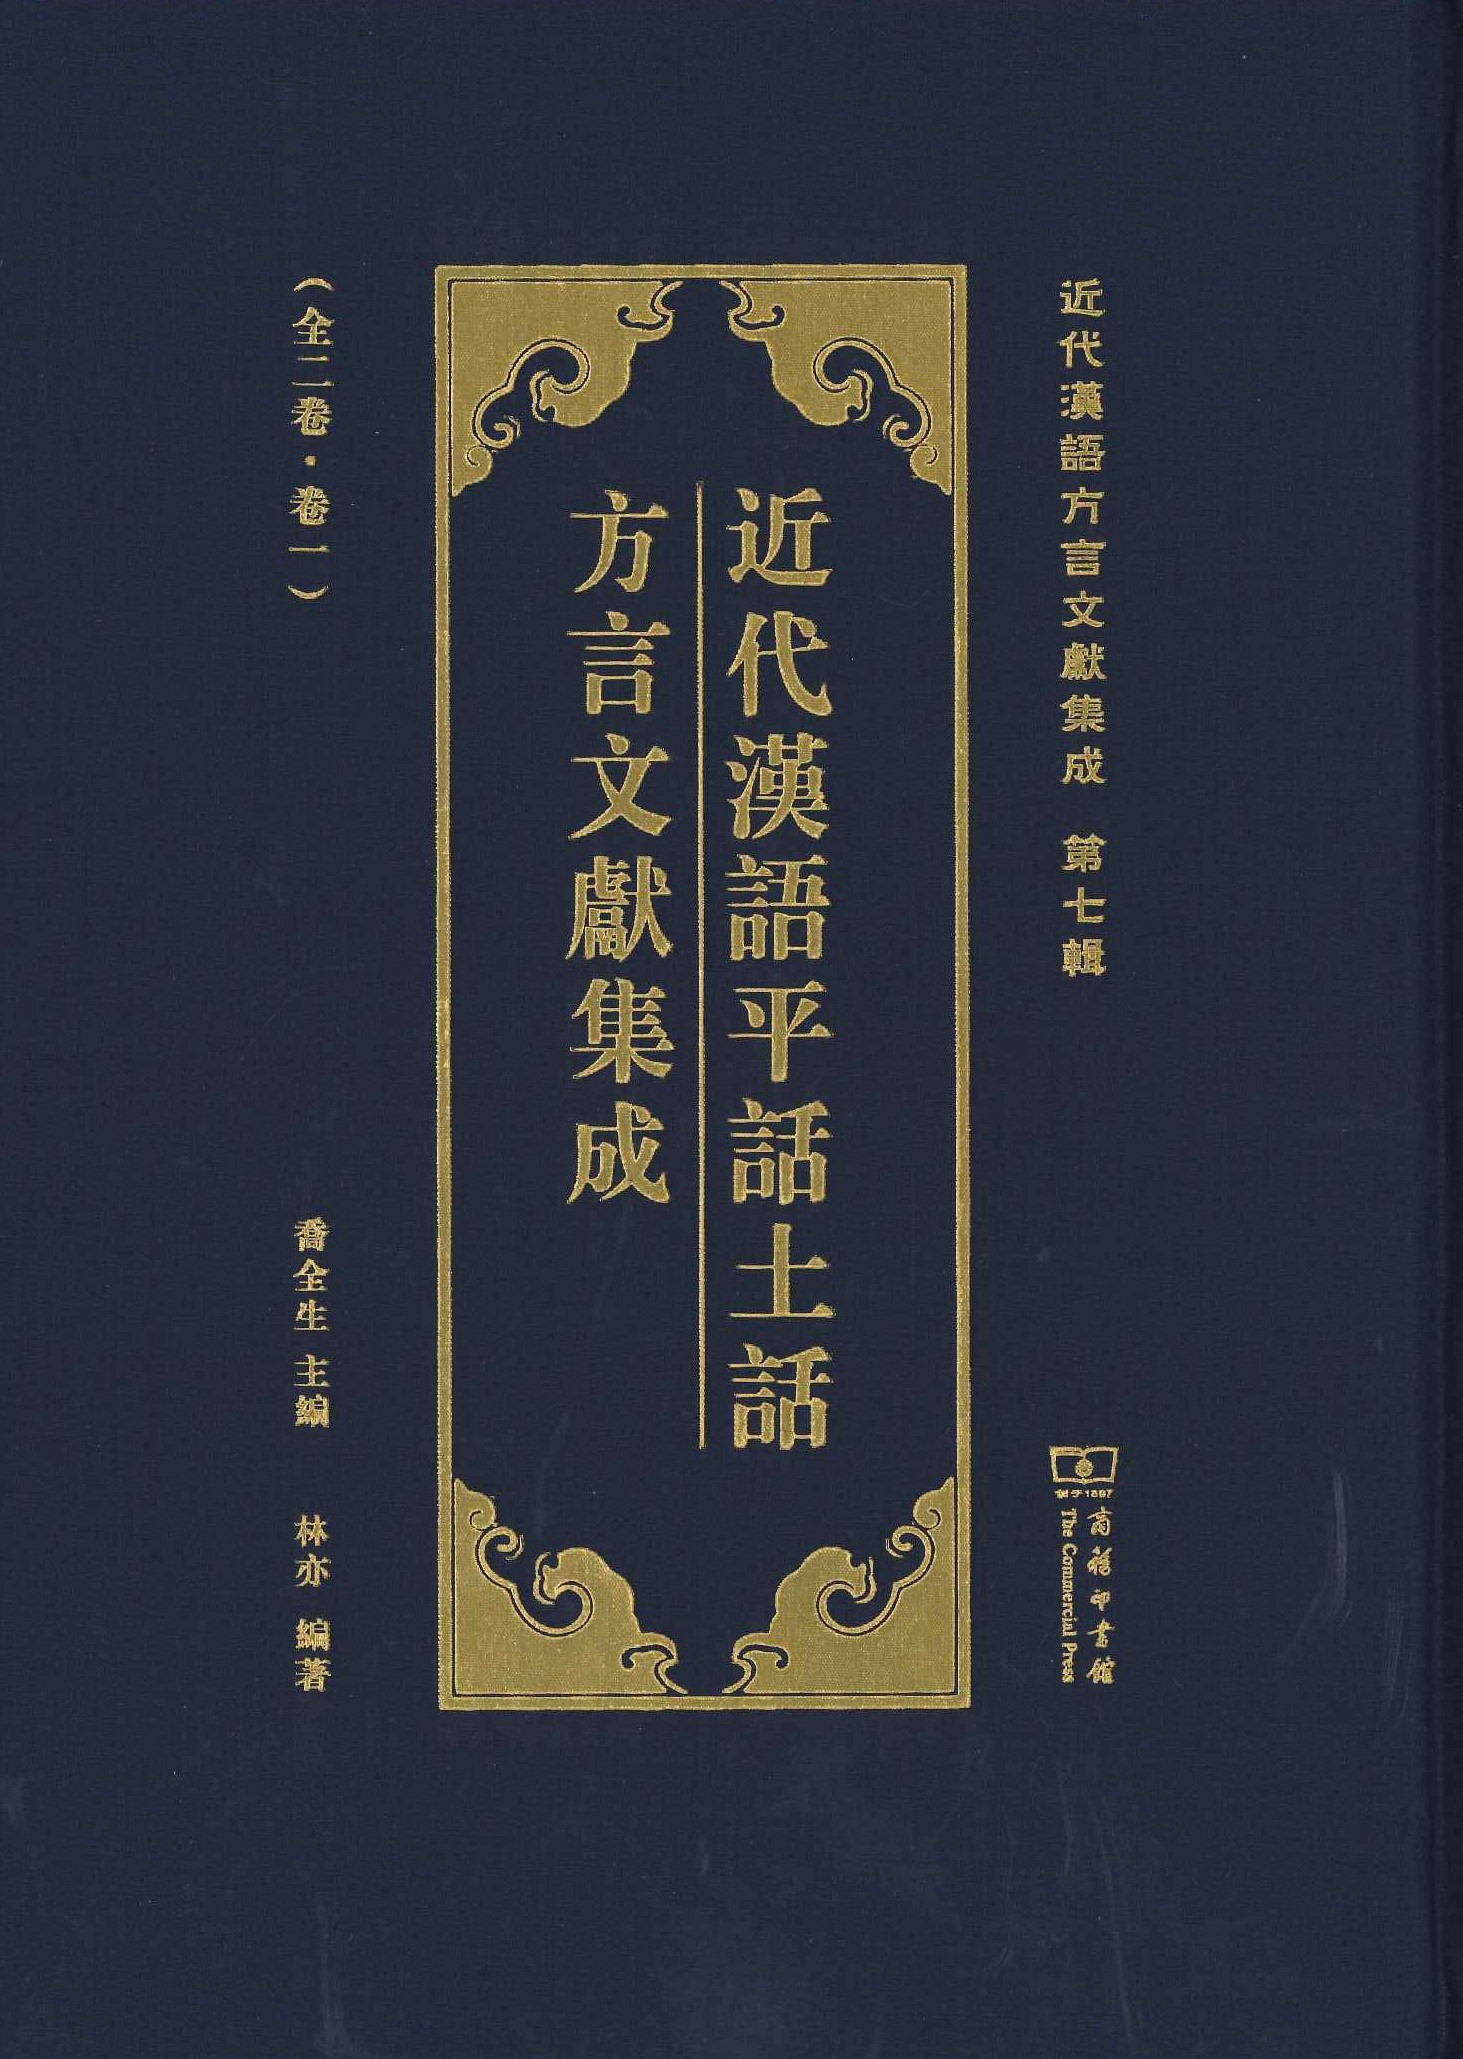 近代汉语平话土话方言文献集成(全2)(近代汉语方言文献集成第7辑)